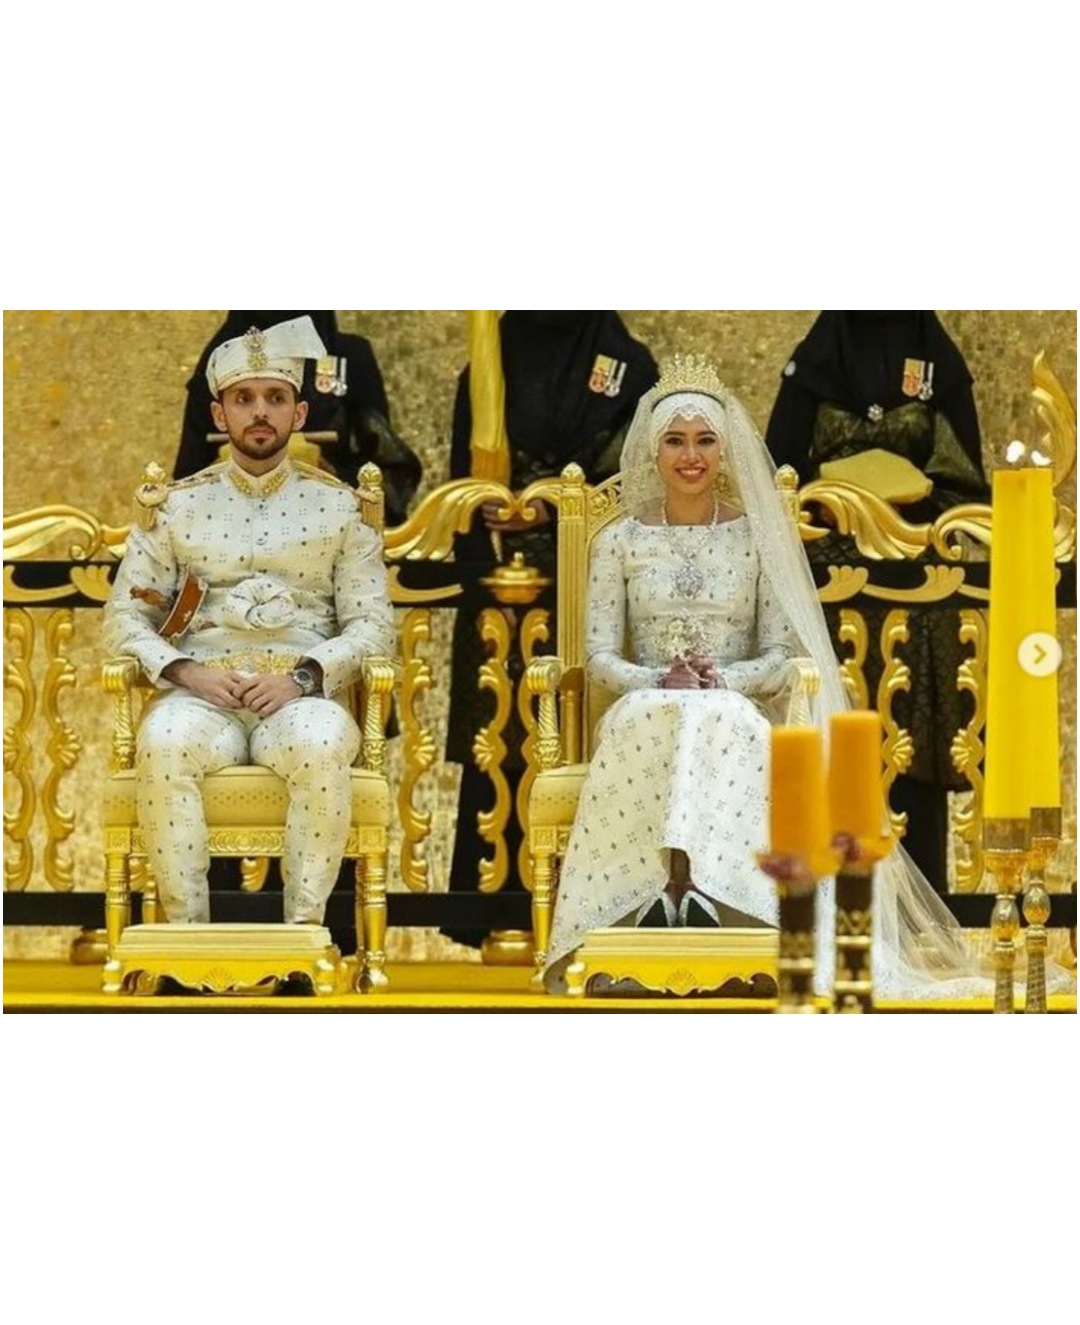 حفل زفاف أسطوري لإبنة سلطان بروناي في القصر السلطاني